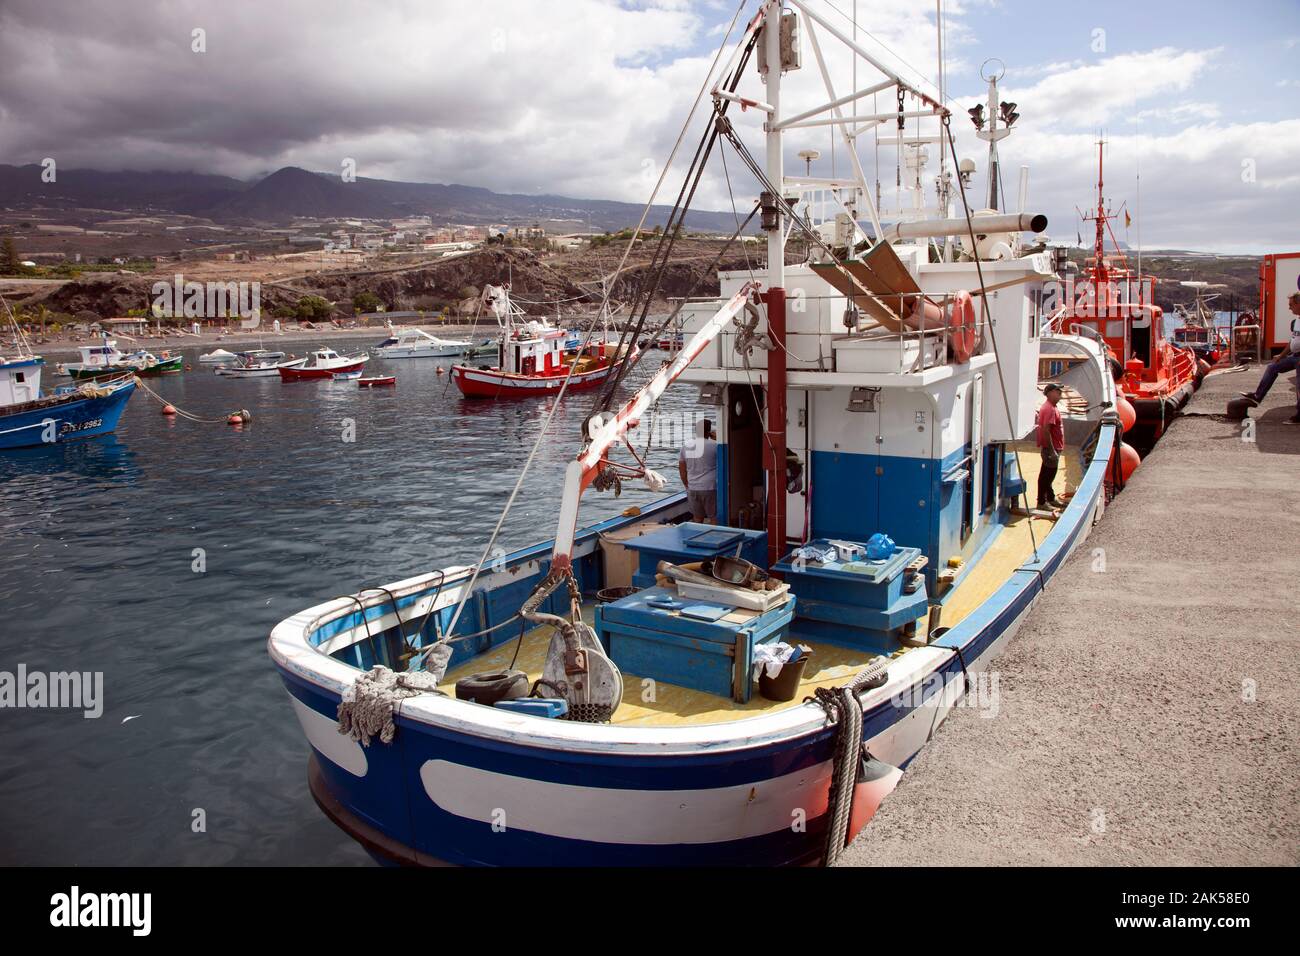 Bateaux de pêche dans le port de San Juan, Tenerife, Îles Canaries Banque D'Images